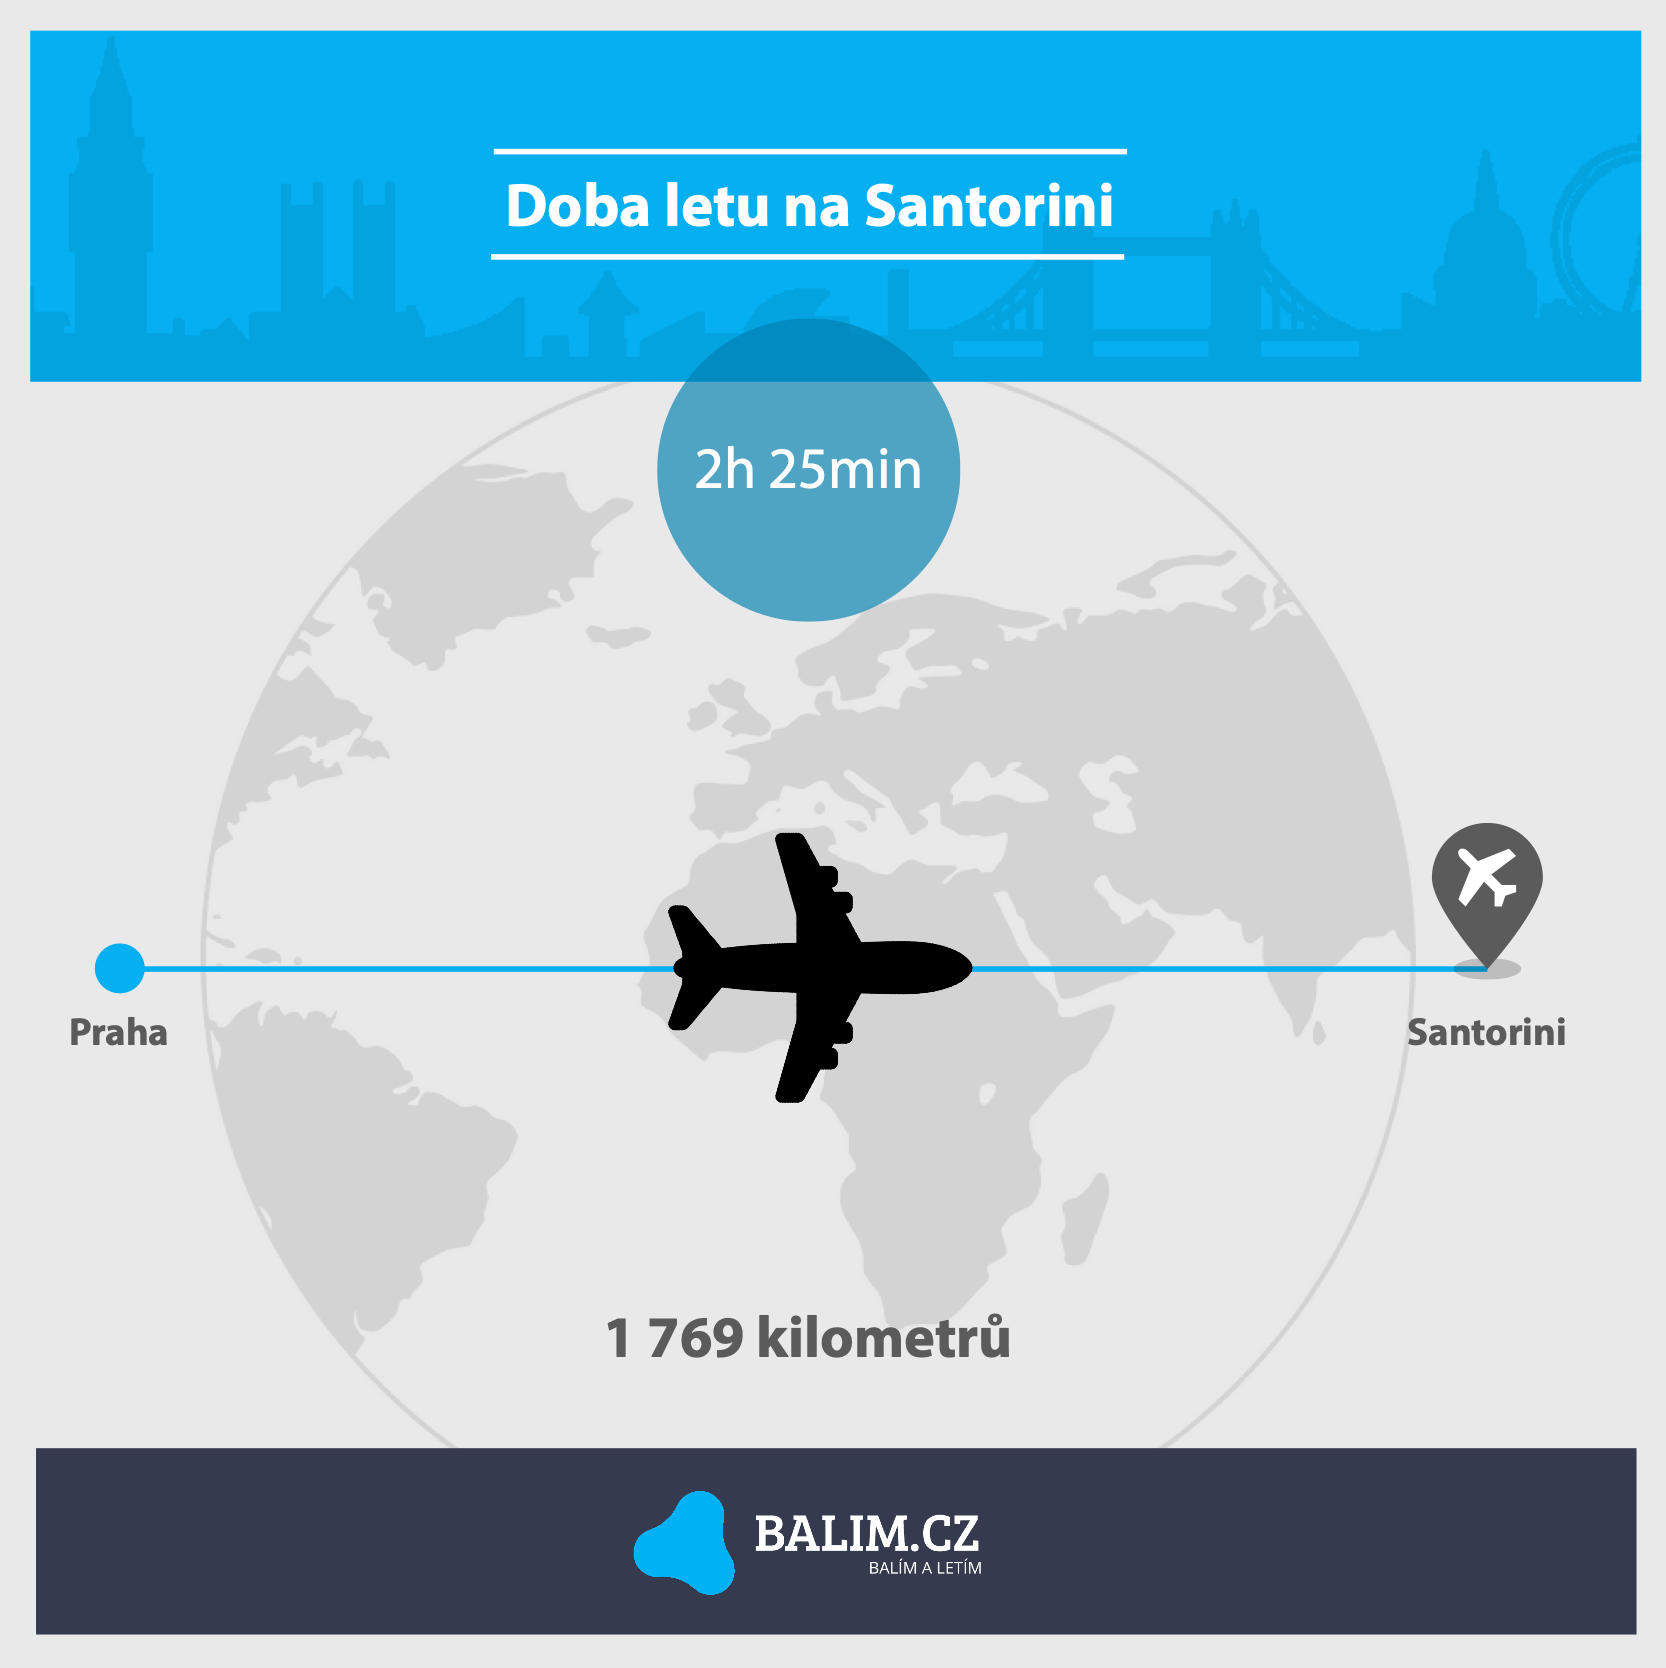 Jak dlouho trvá let z Prahy do Santorini?